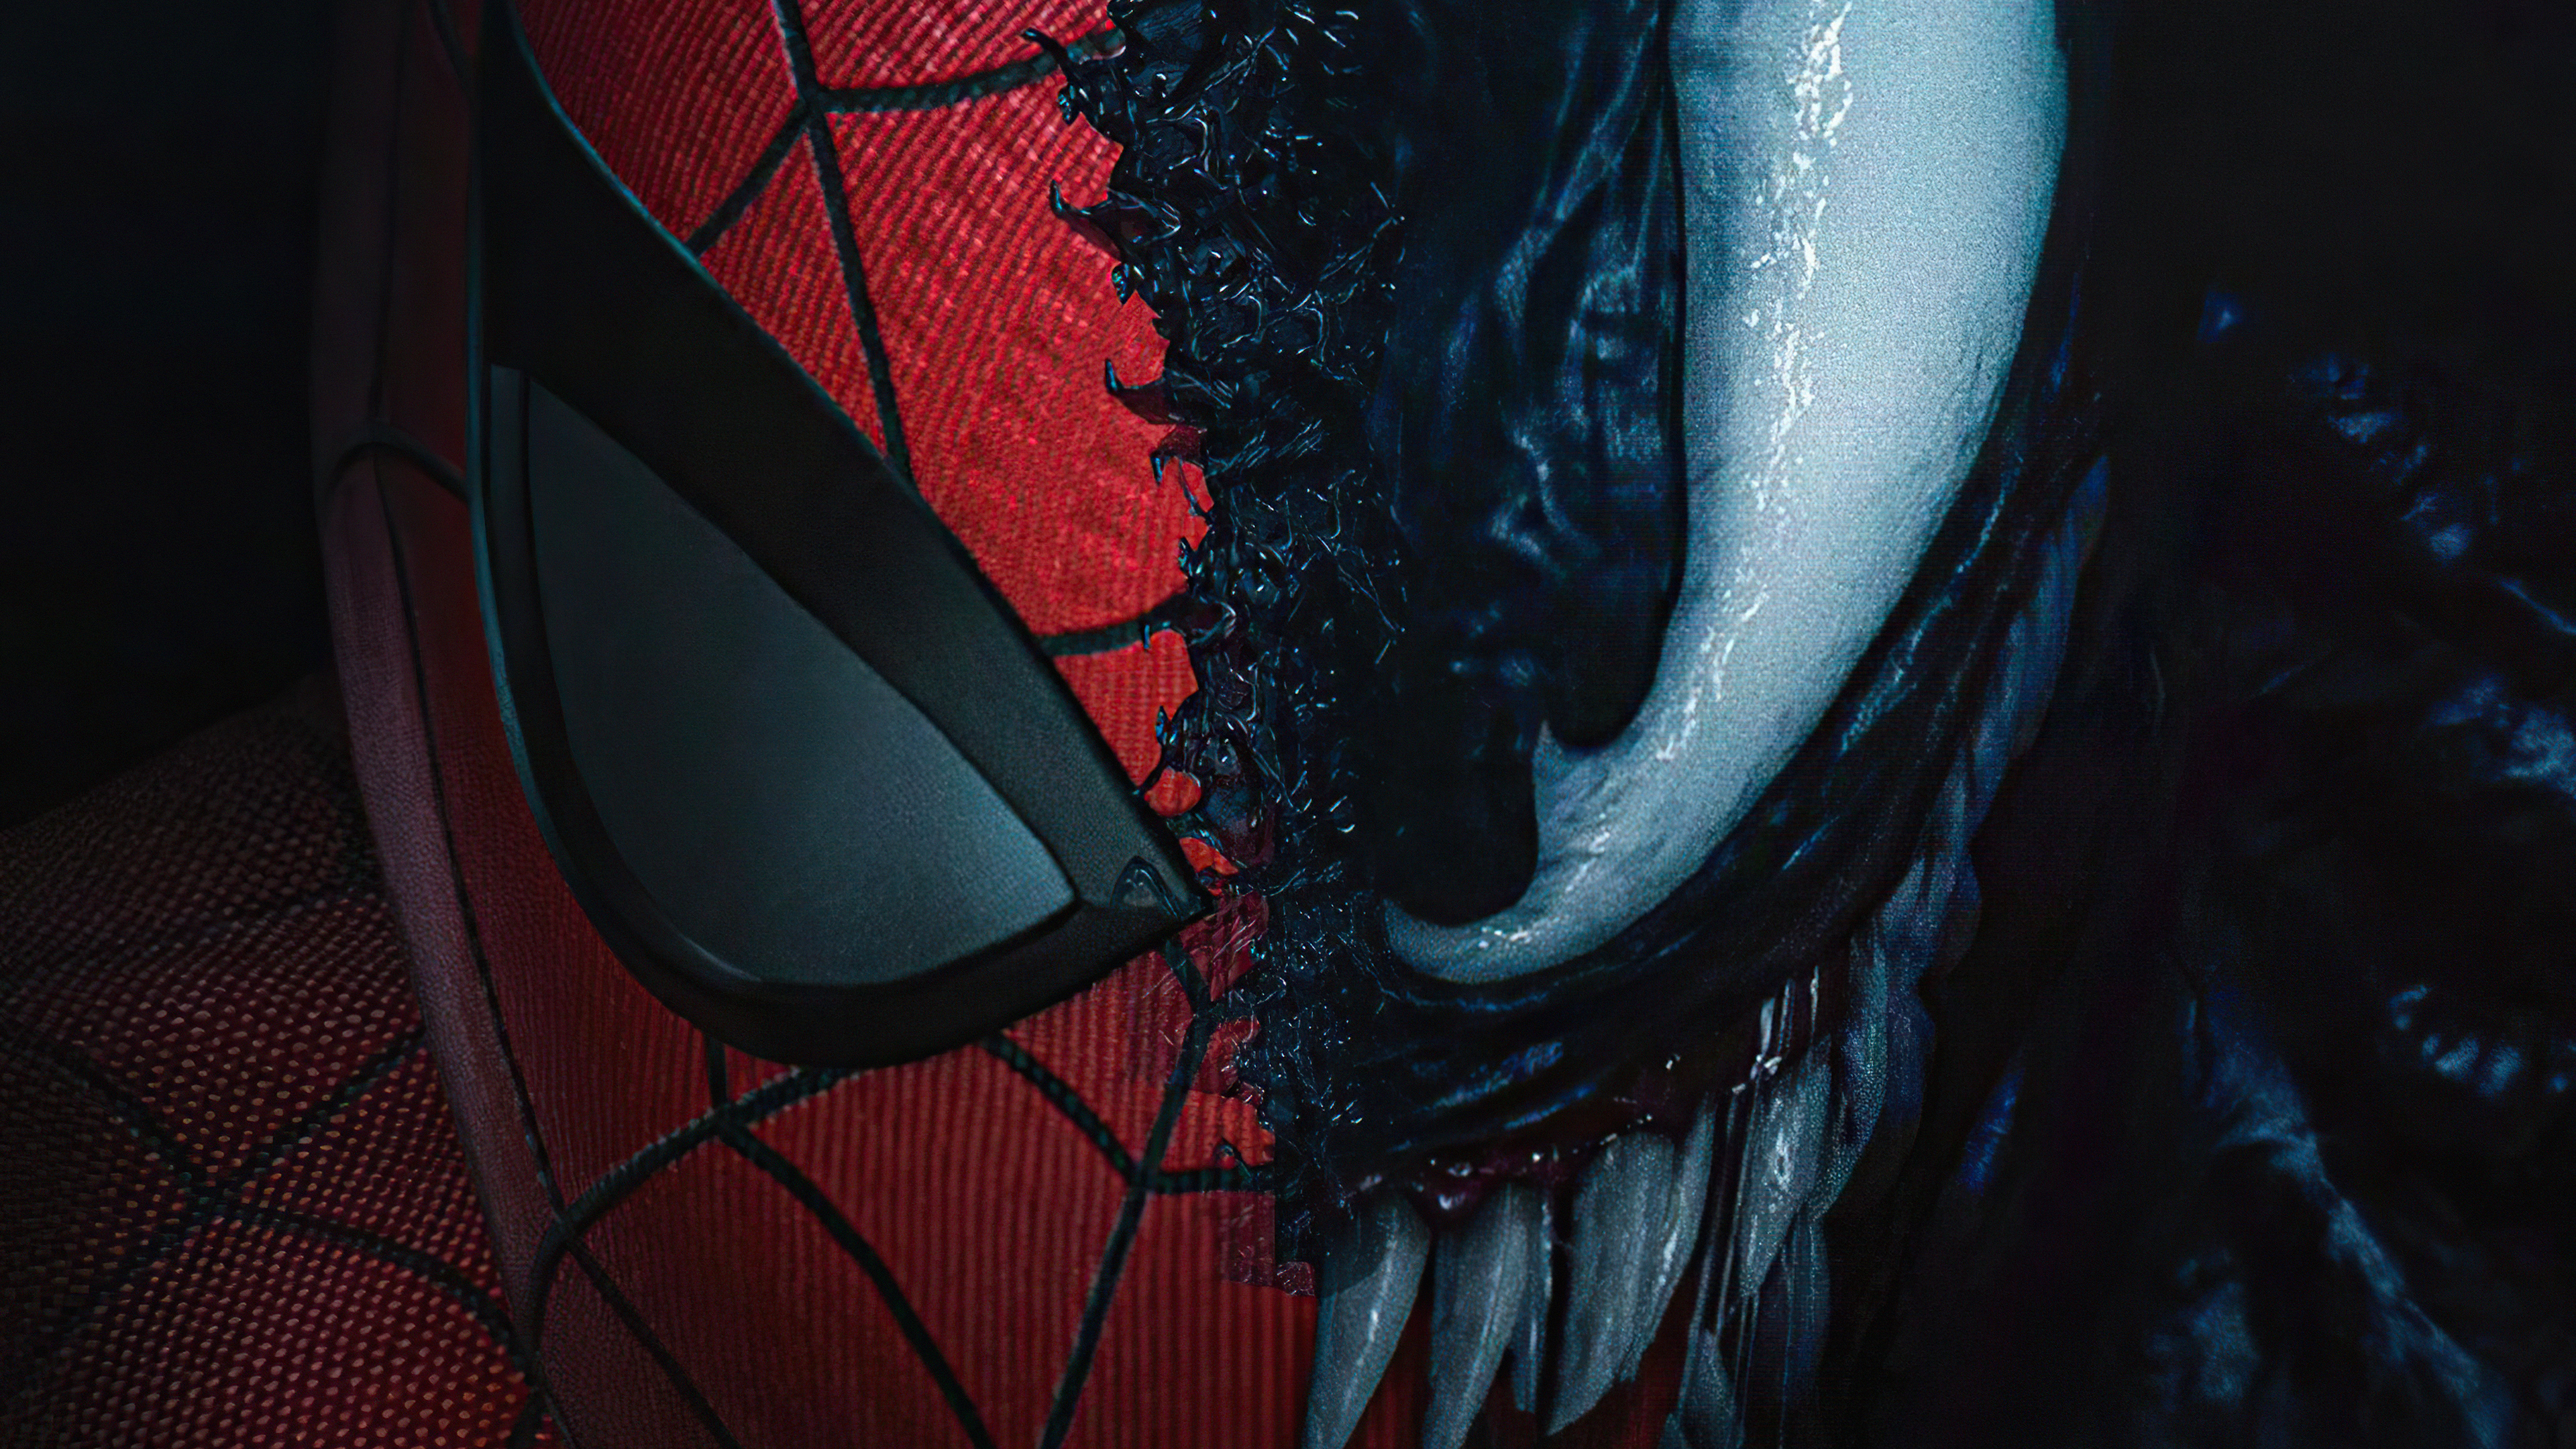 Venom Vs Spider Man Art Wallpapers